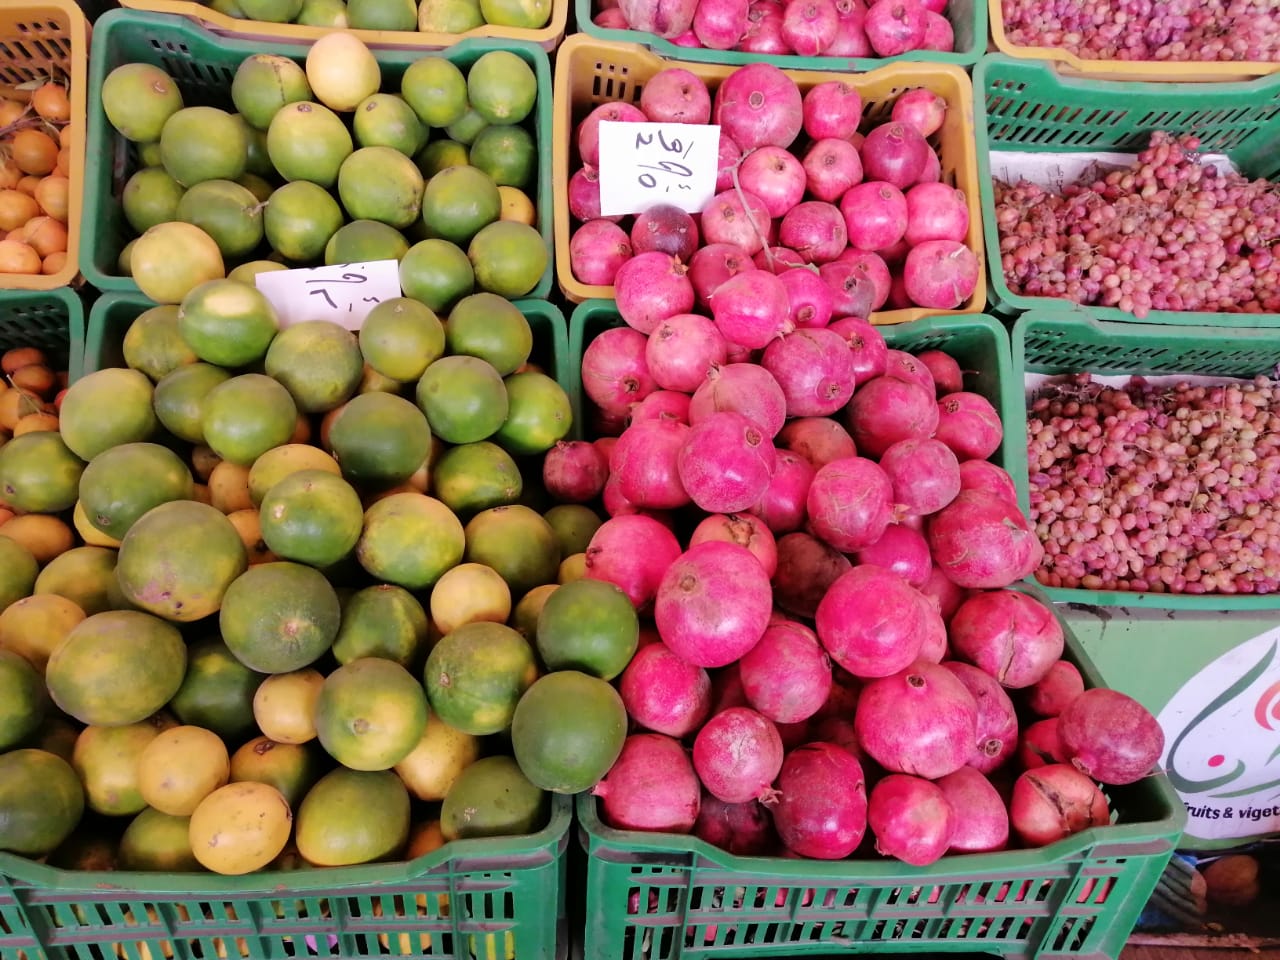 الفاكهة والخضر بسوق الغربية (9)